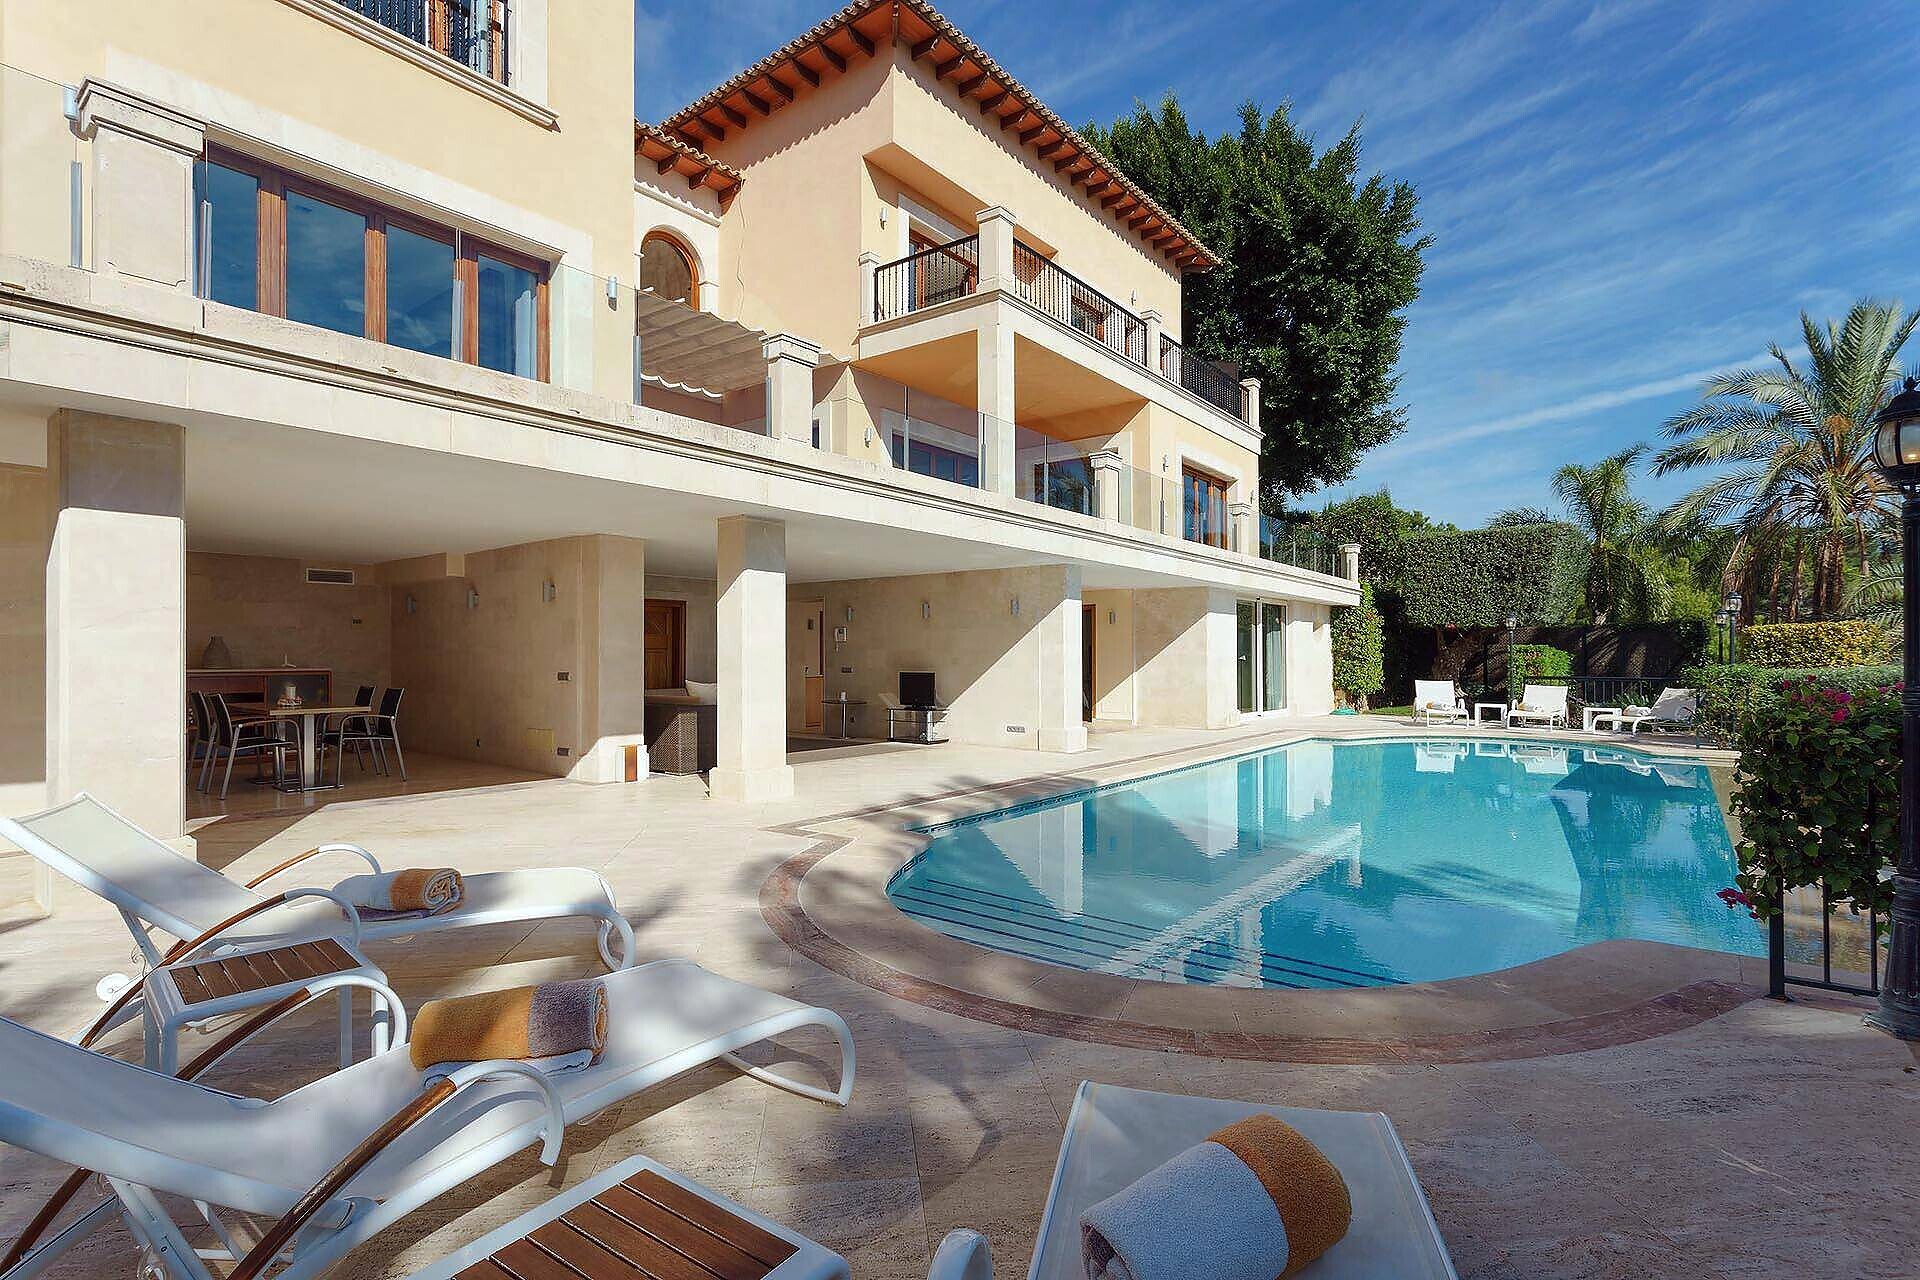 01-280 spacious villa near Palma de Mallorca Bild 5